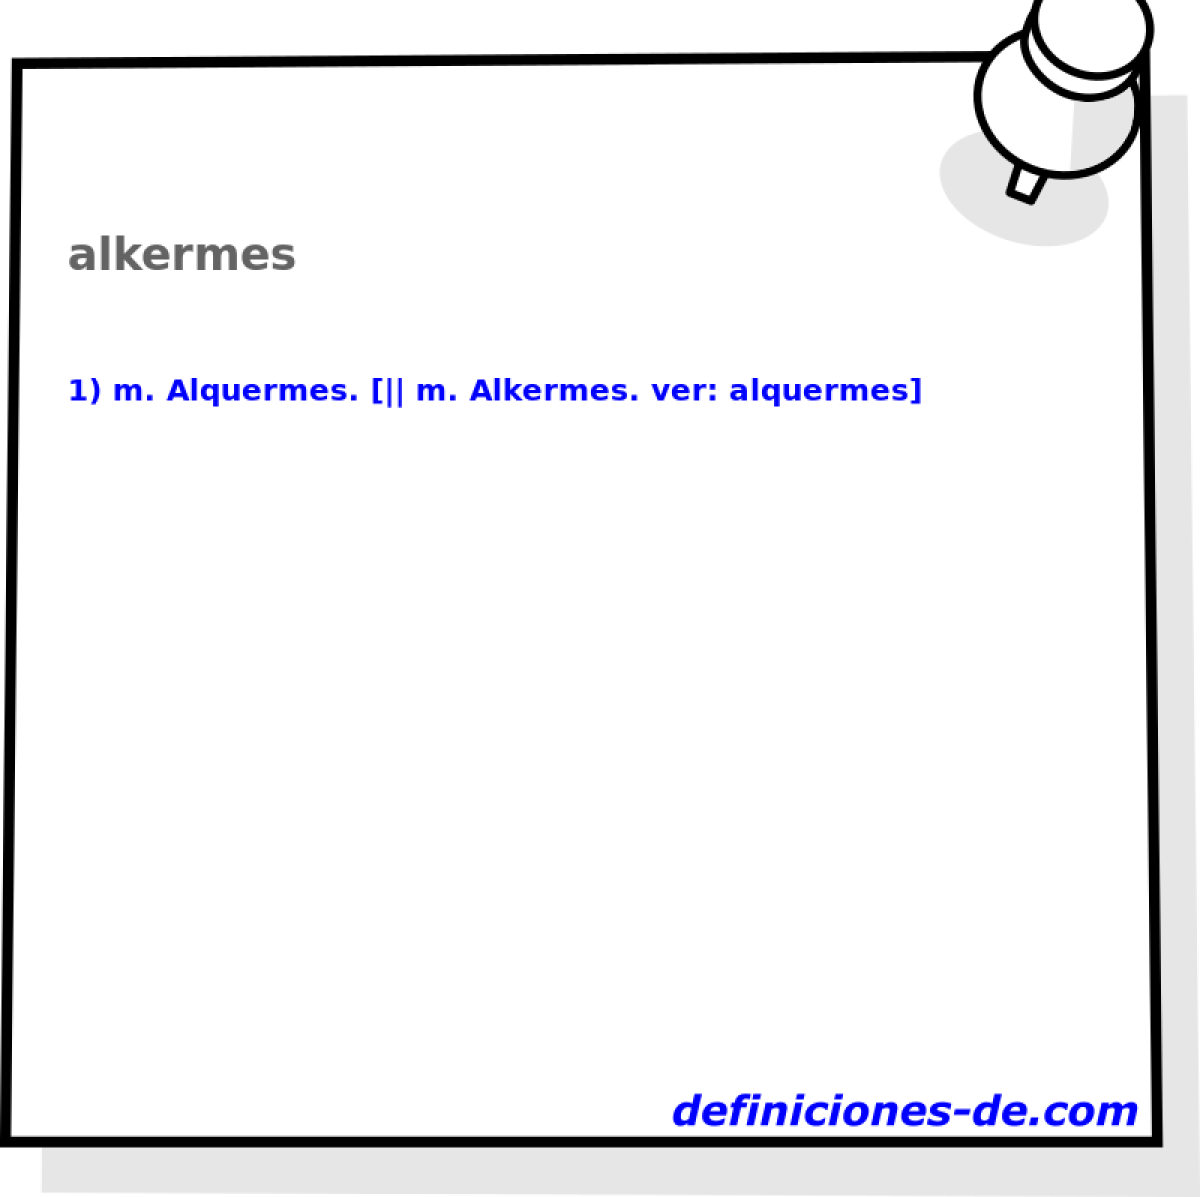 alkermes 